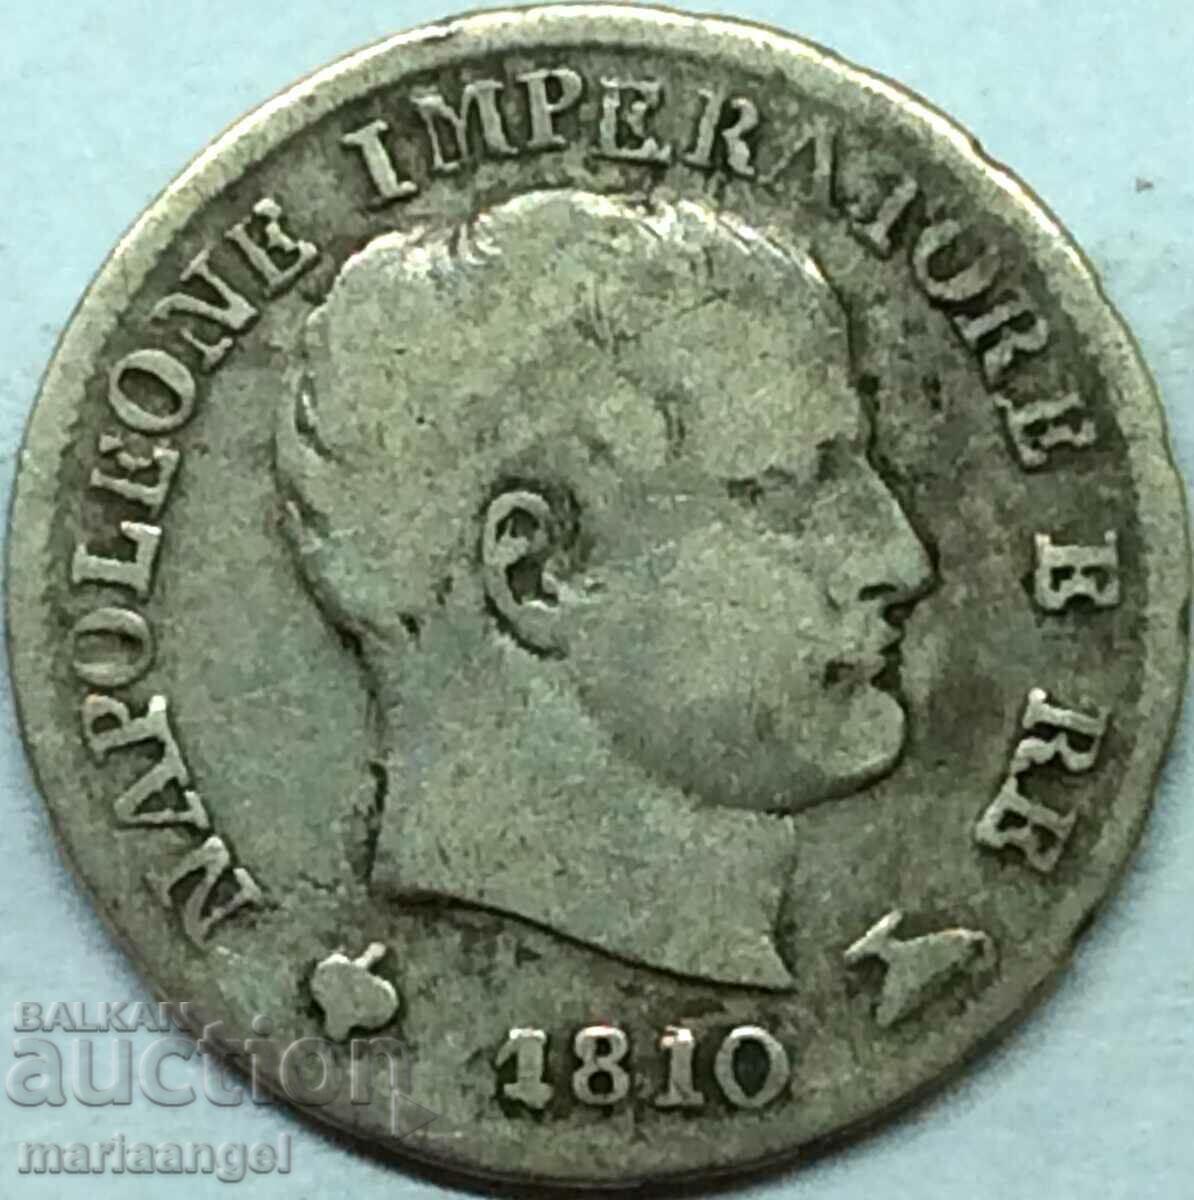 Napoleon 5 Soldi 1810 M - Μιλάνο Ιταλία ασημί - αρκετά σπάνιο